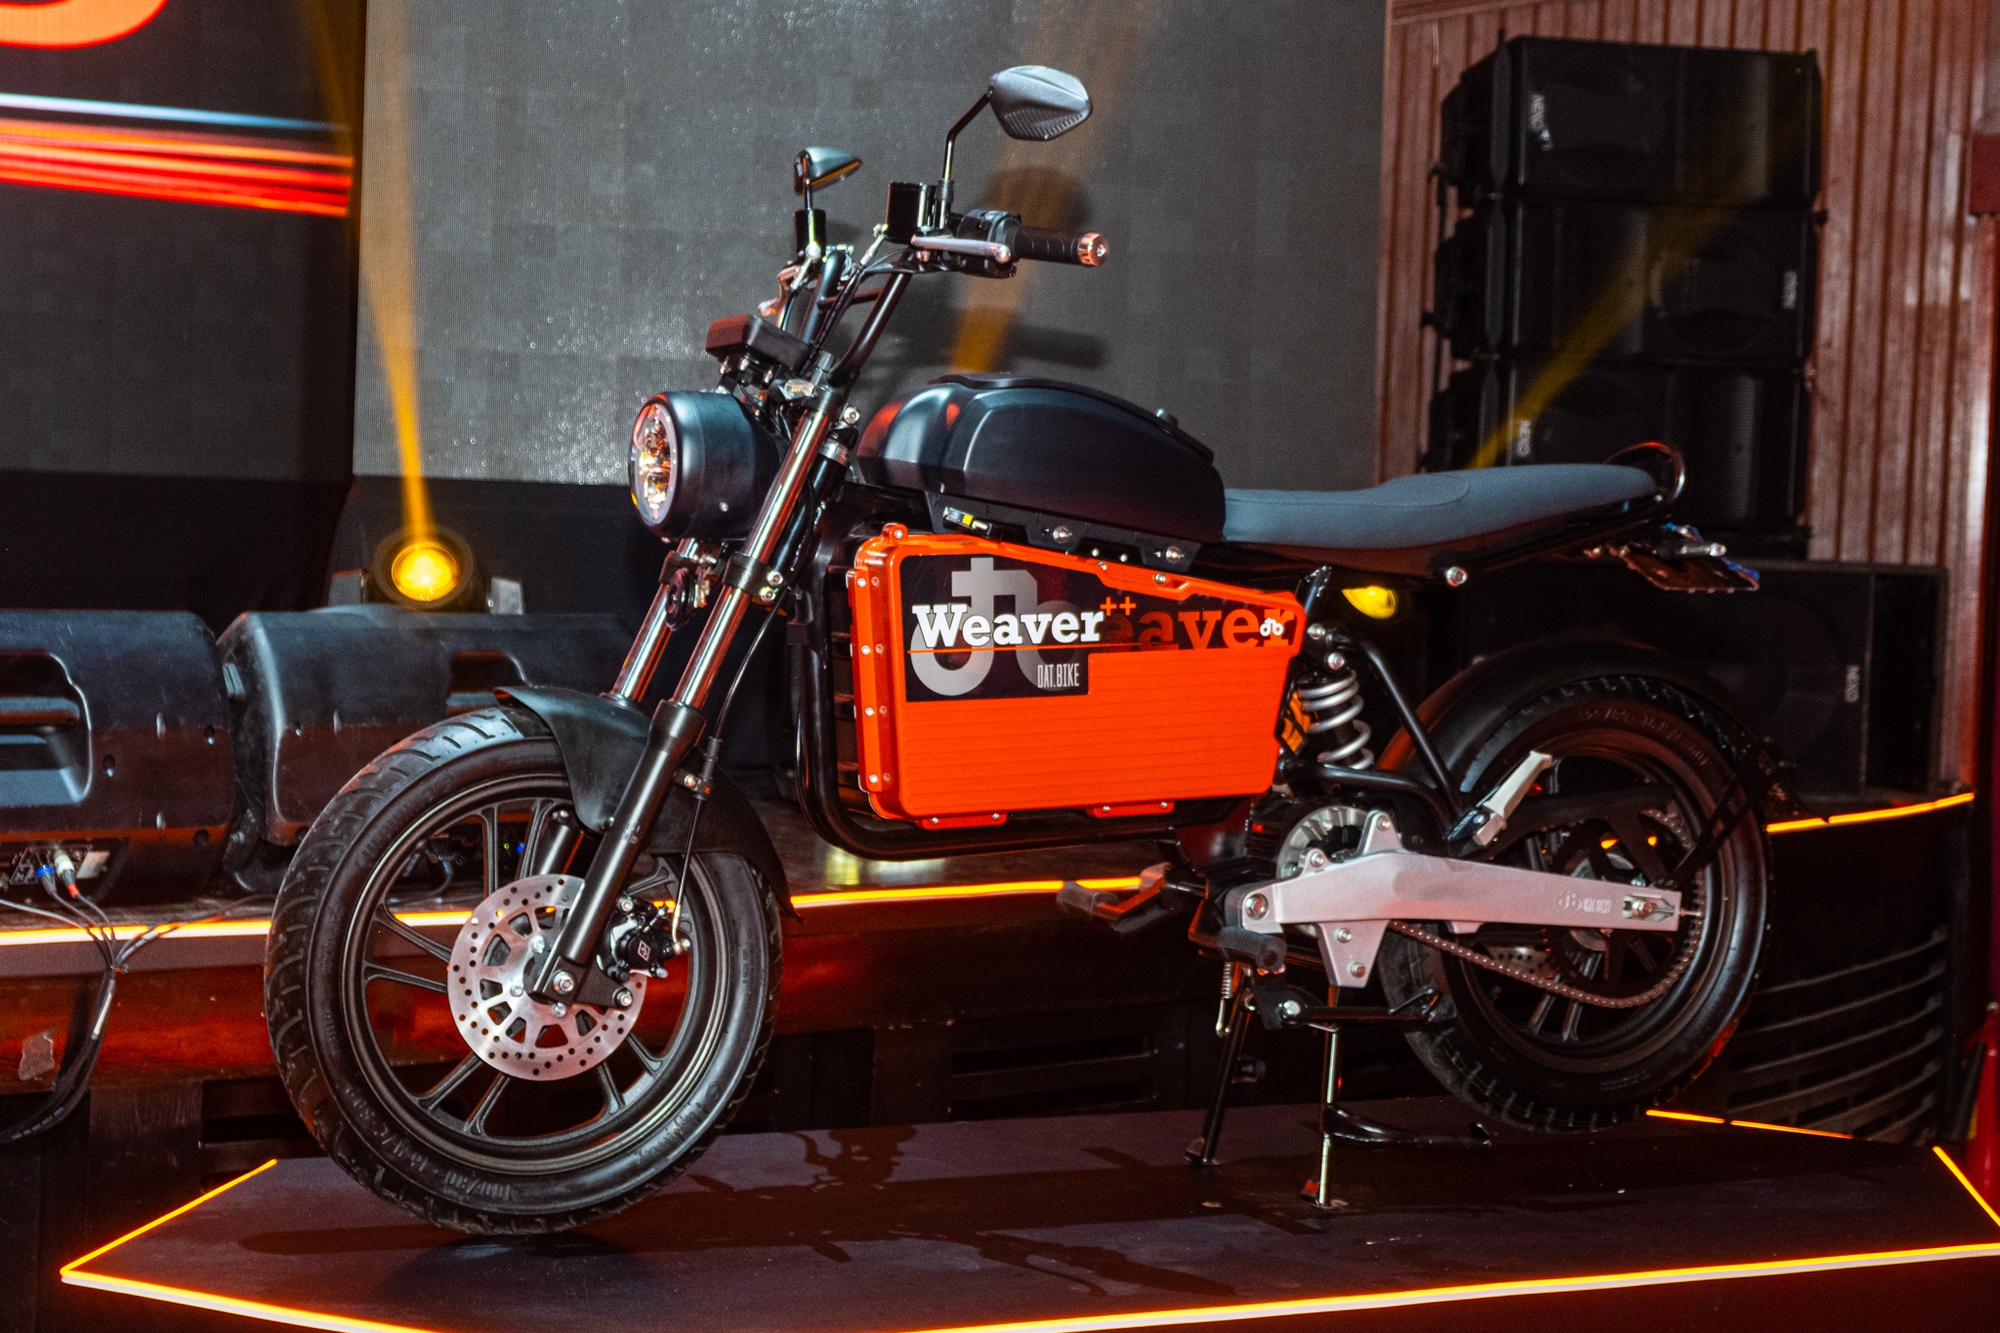 Ra mắt Dat Bike Weaver++: Giá 65,9 triệu đồng, dáng cổ điển, sạc nhanh ...